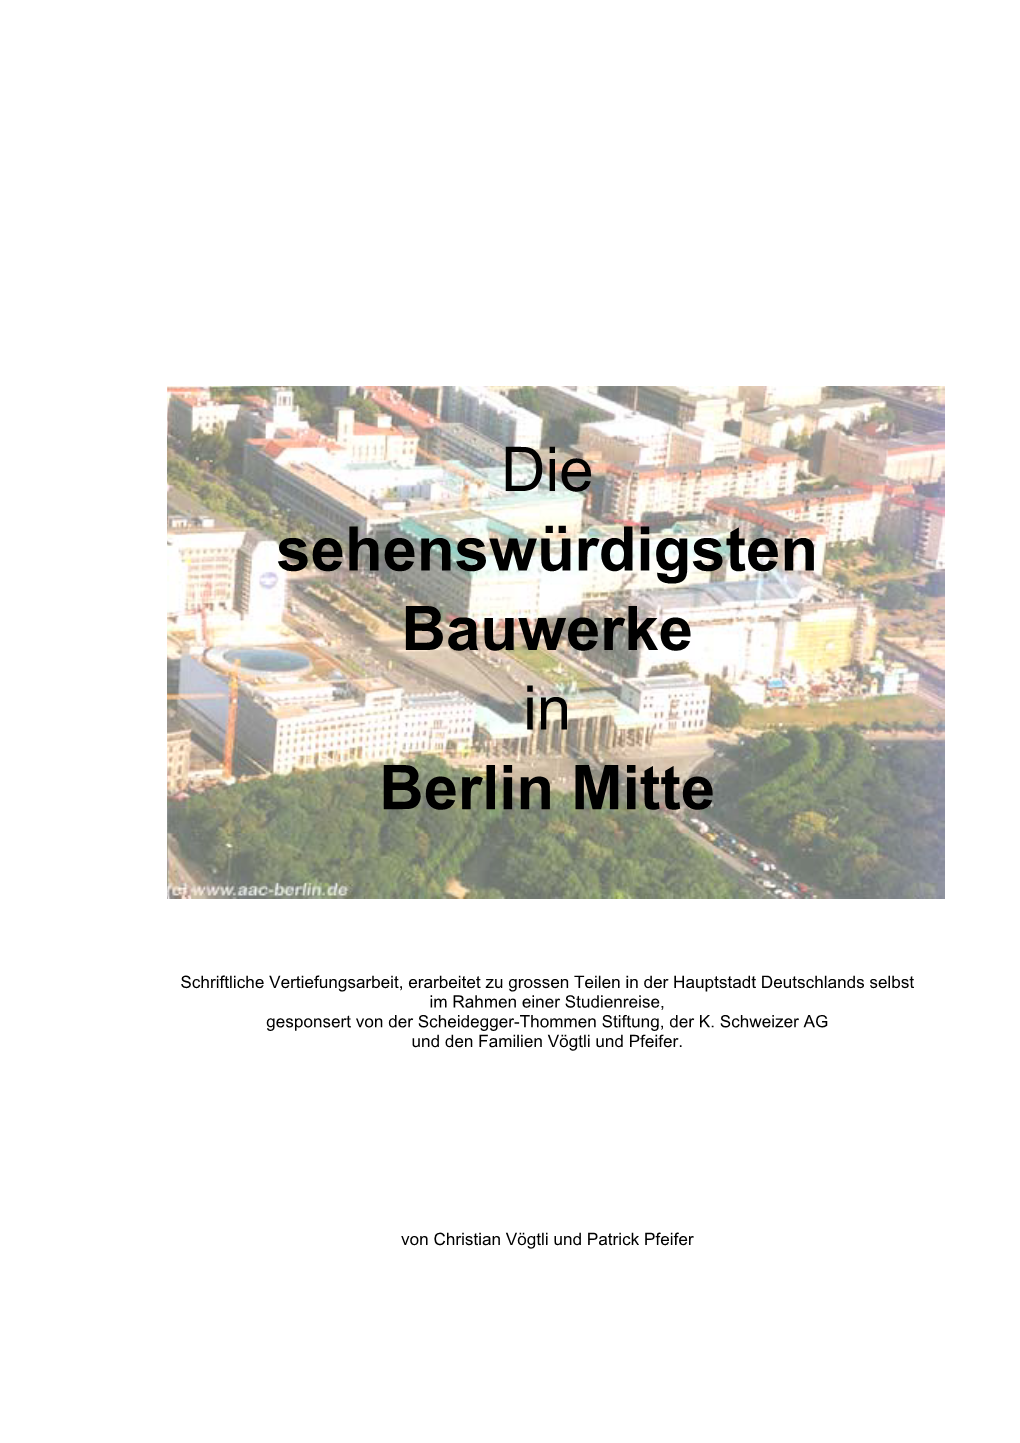 Die Sehenswürdigsten Bauwerke in Berlin Mitte